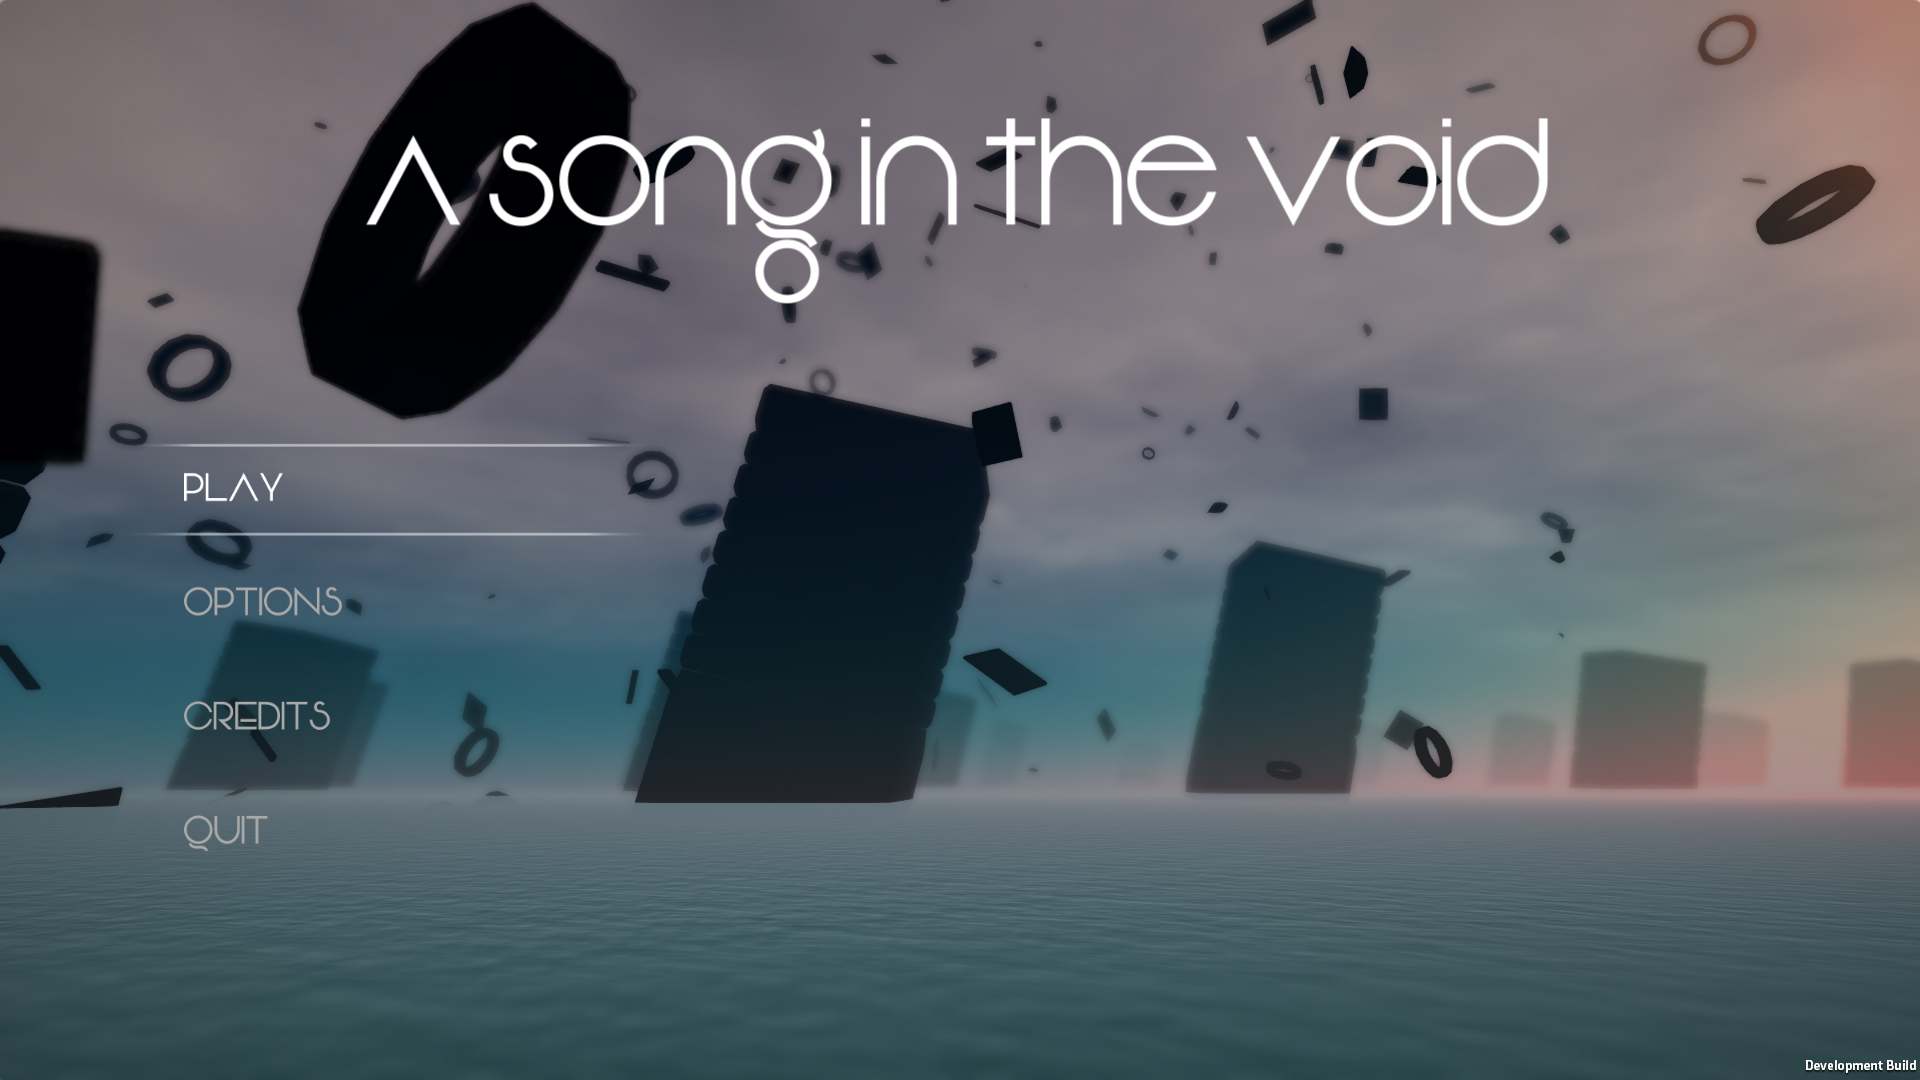 Как пользоваться крюком voices of the void